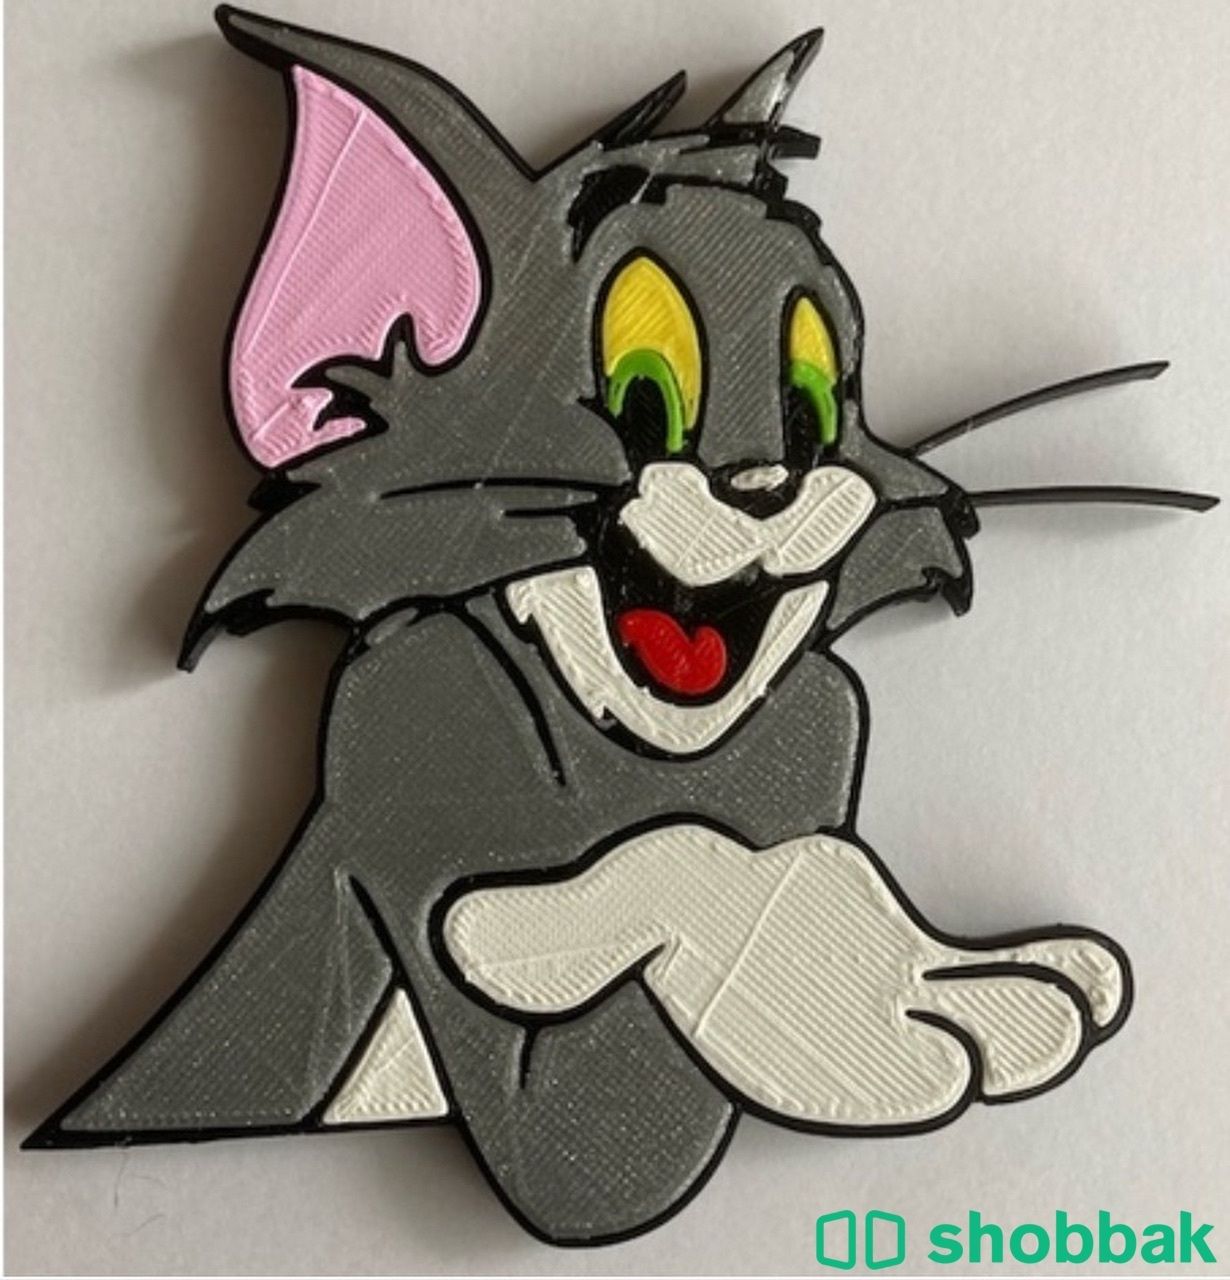 لوحات بتقنية 3D Shobbak Saudi Arabia